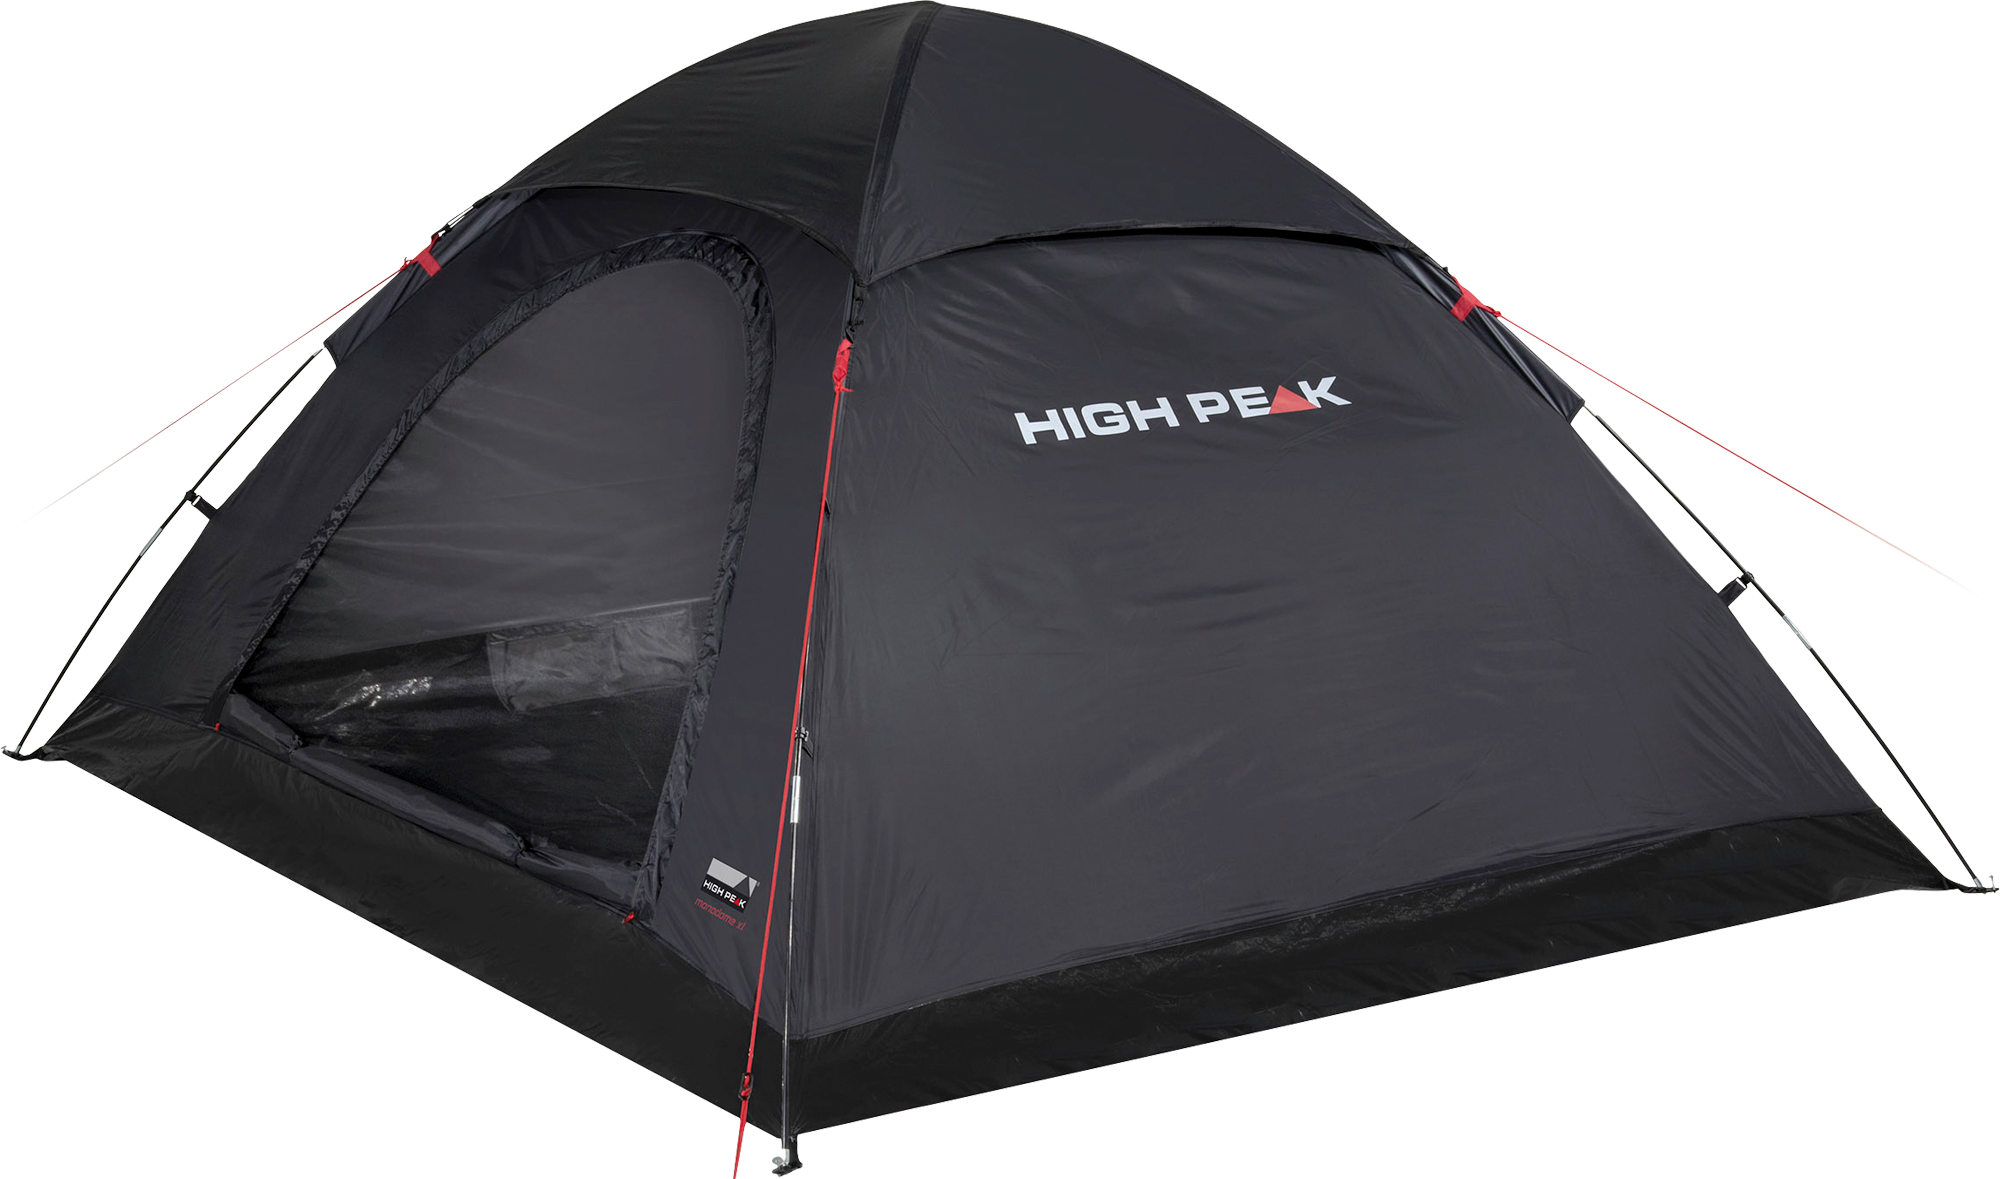 High Peak Monodome XL freistehendes Einfachdach Kuppelzelt 4 Personen schwarz